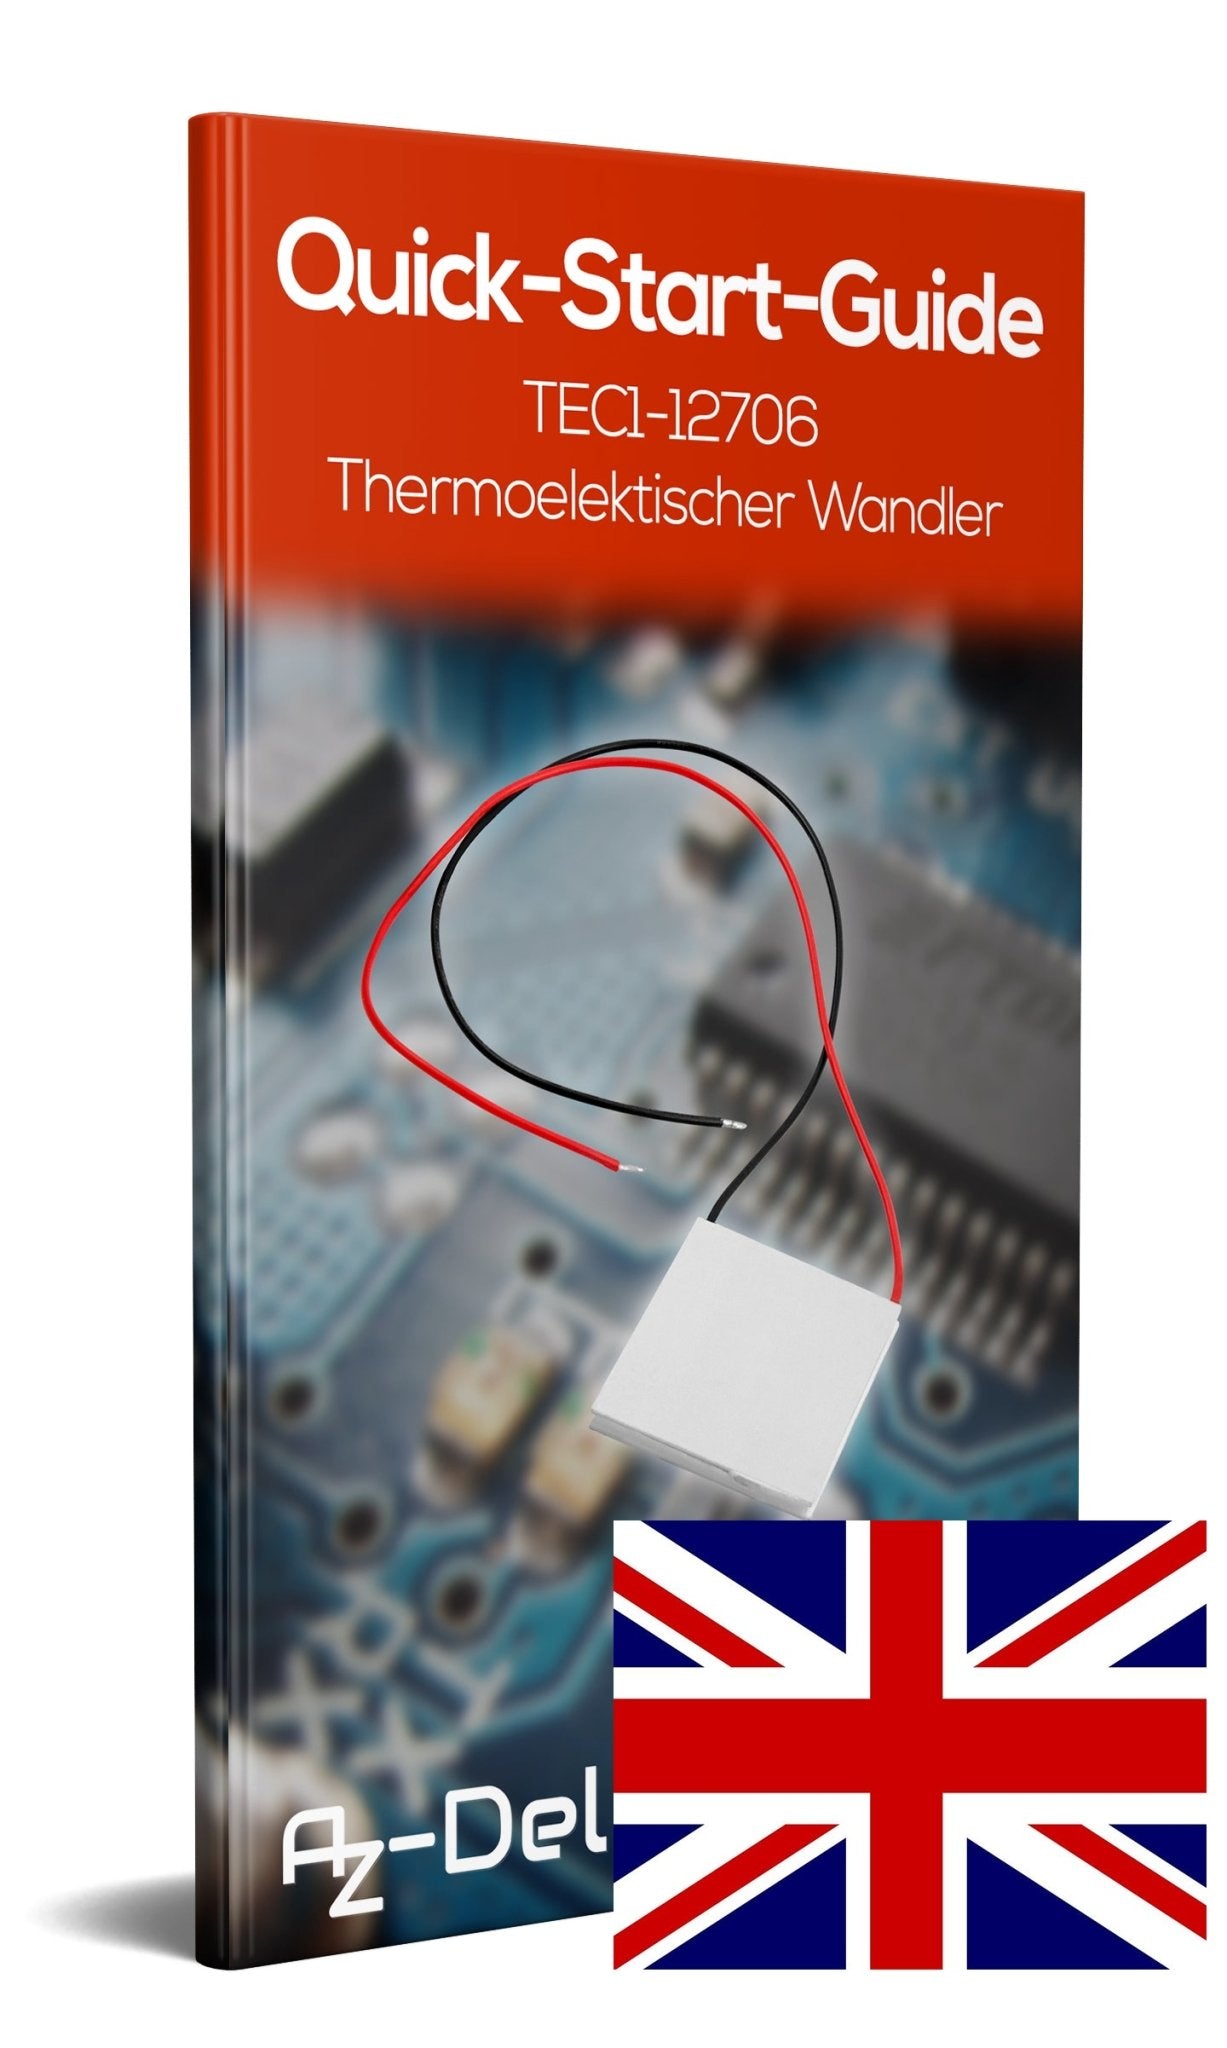 TEC1-12706 Thermoelektischer Wandler - AZ-Delivery